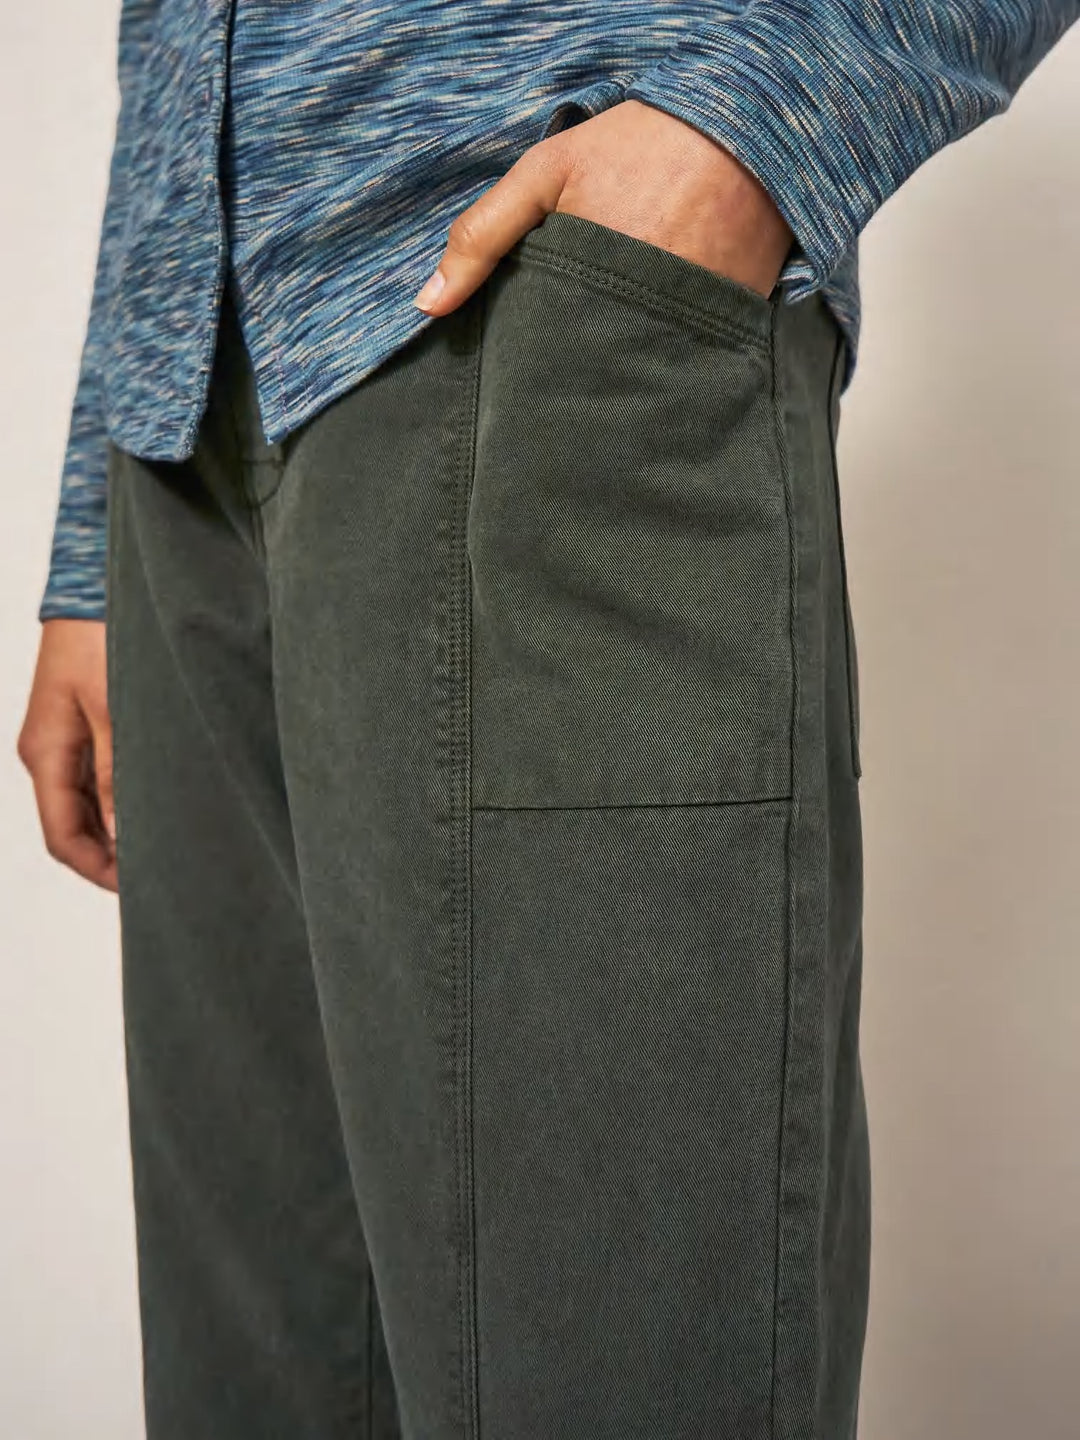 Pantalon coupe droite avec coutures décoratives